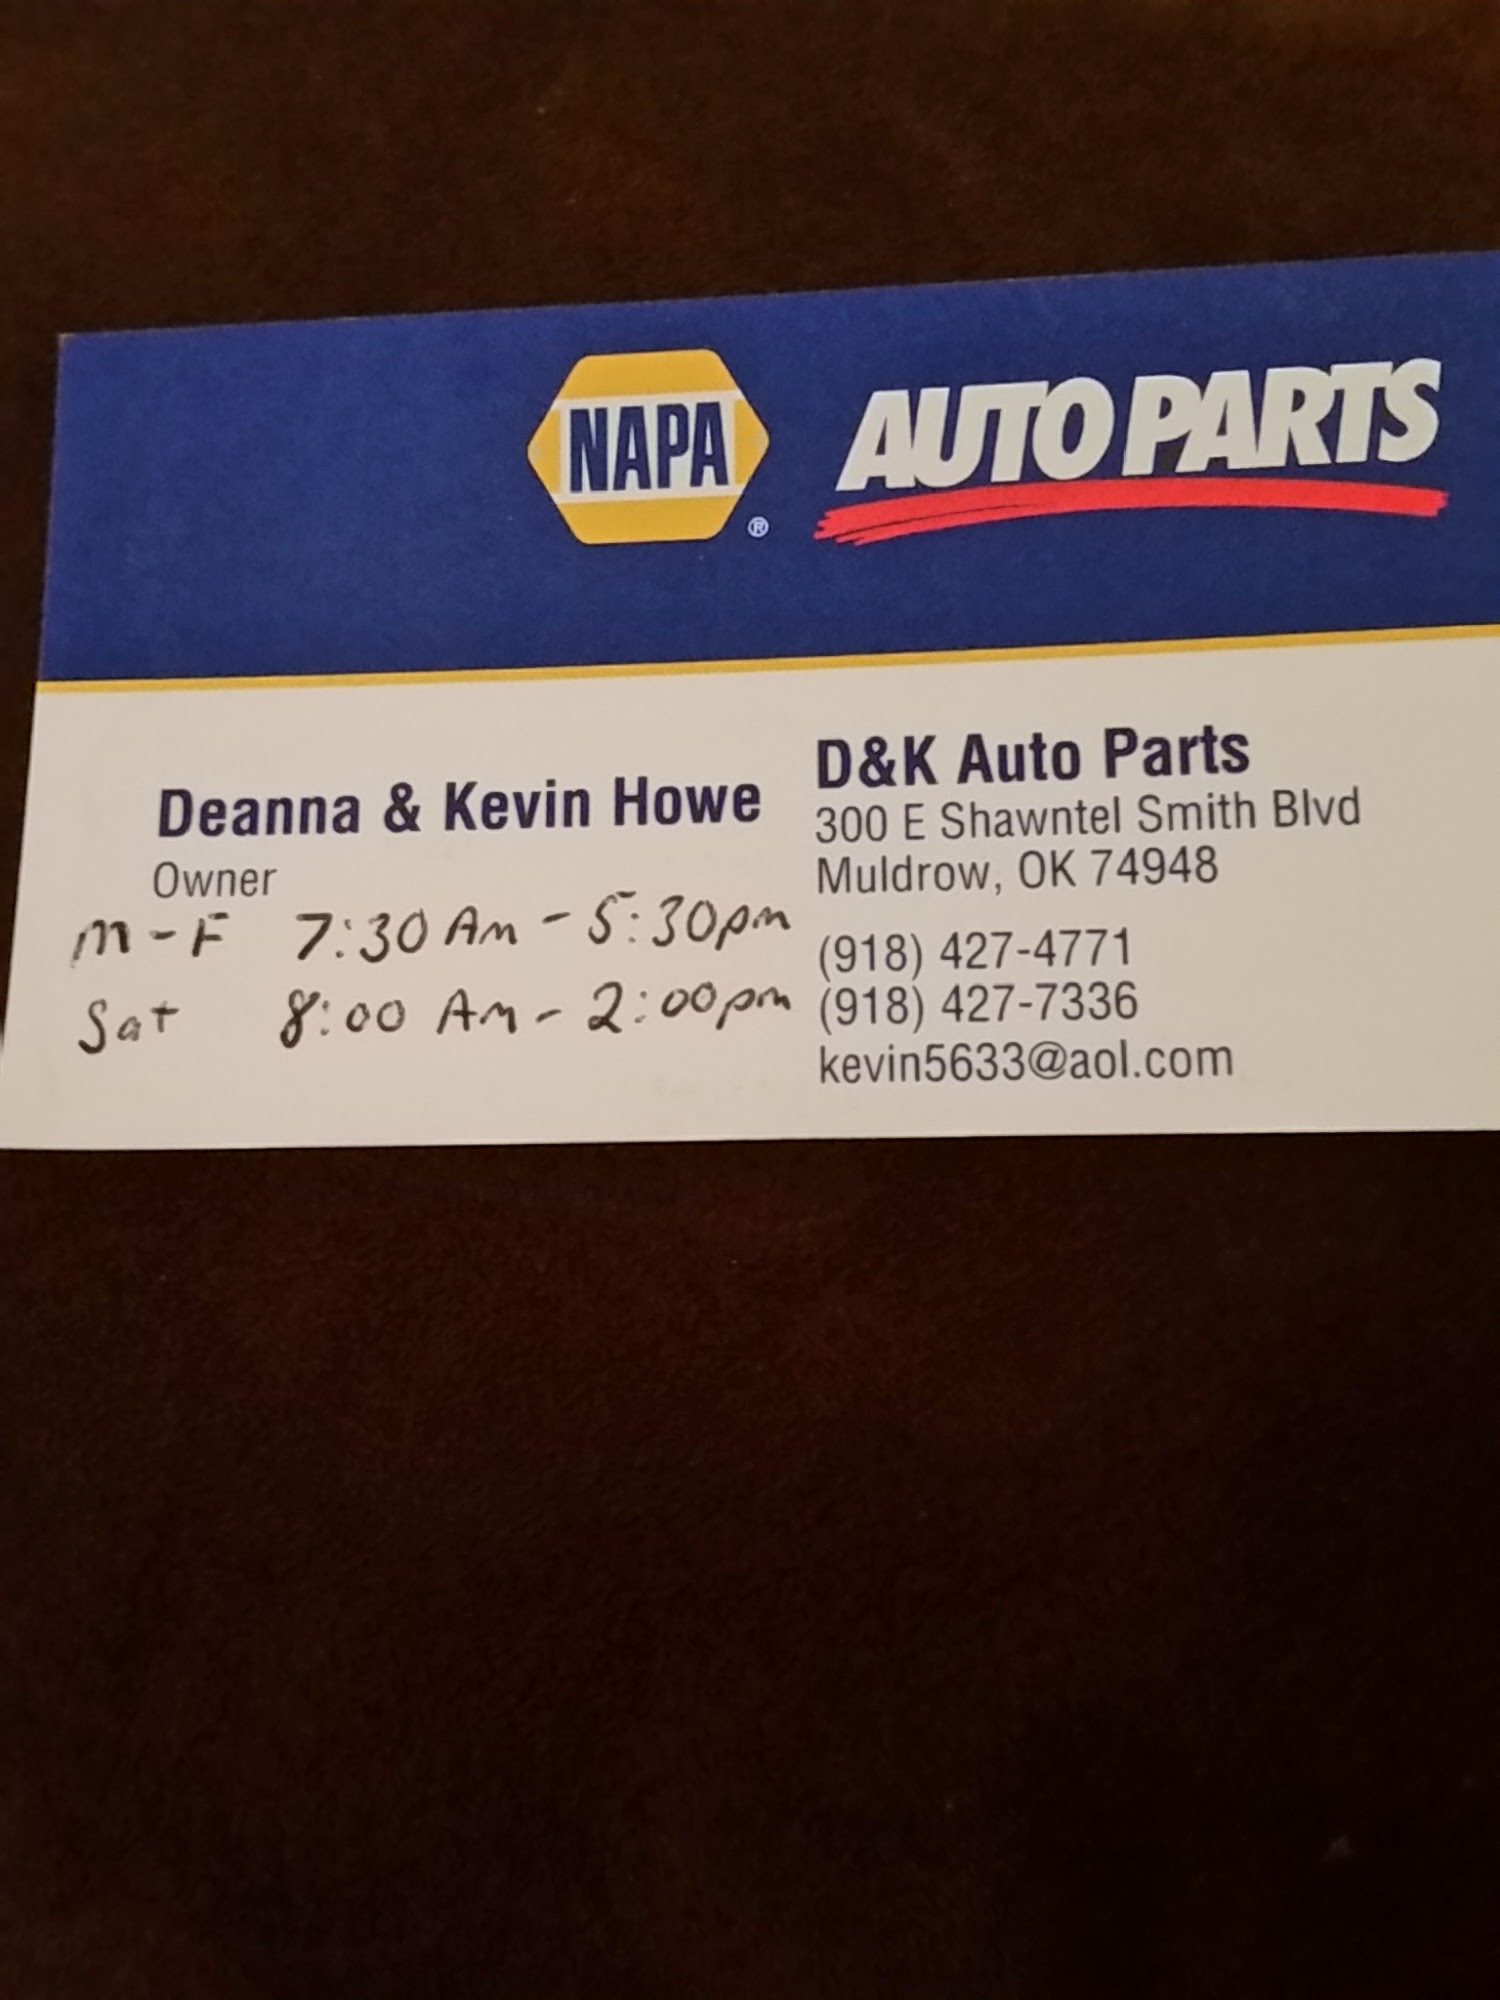 NAPA Auto Parts - D & K Auto Parts, LLC